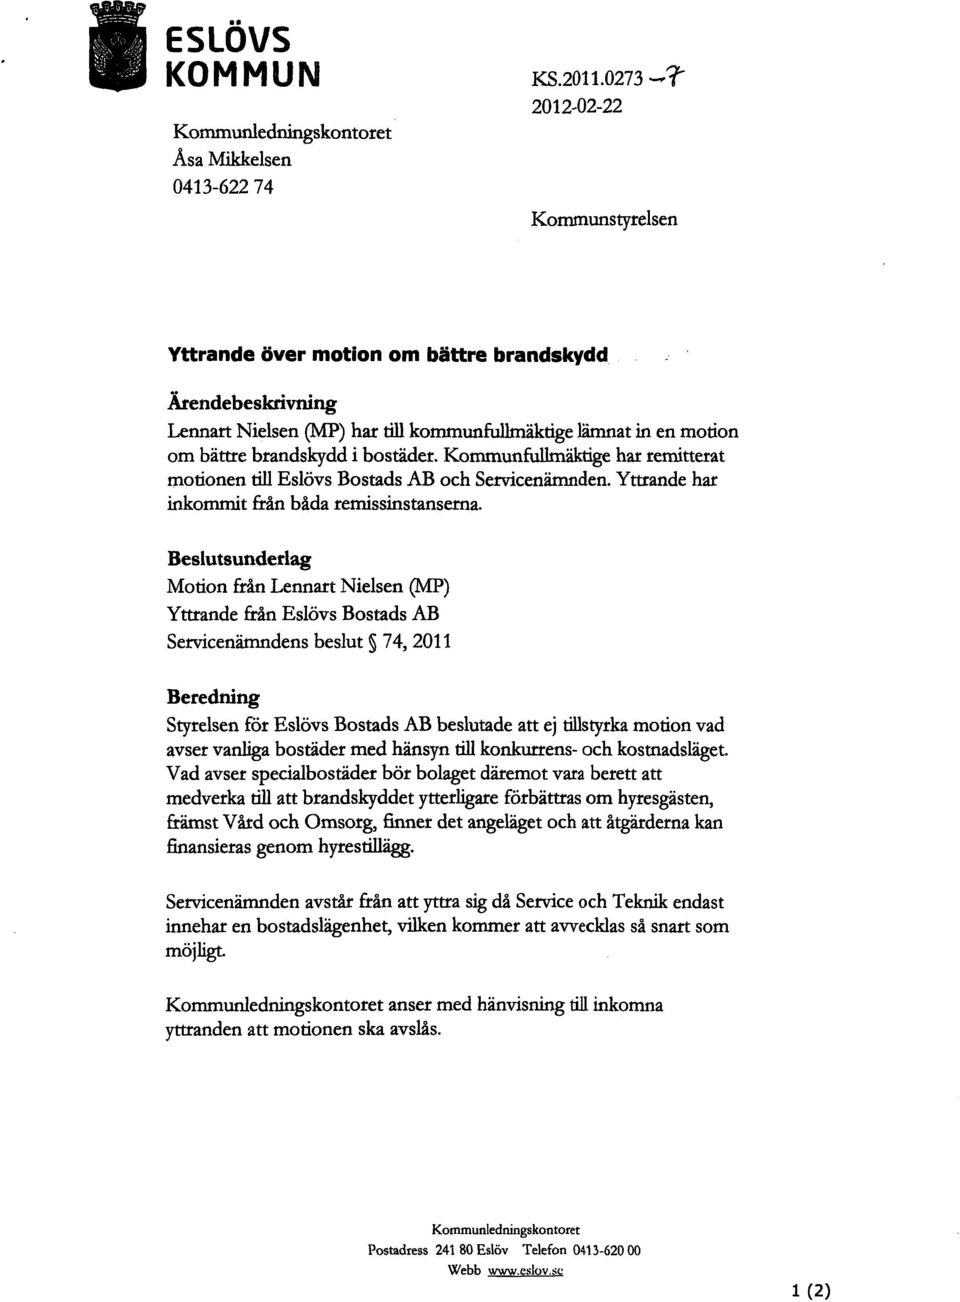 Kommunfullmäktige har remitterat motionen till Eslövs Bostads AB och Servicenämnden. Yttrande har inkommit från båda remissinstanserna.